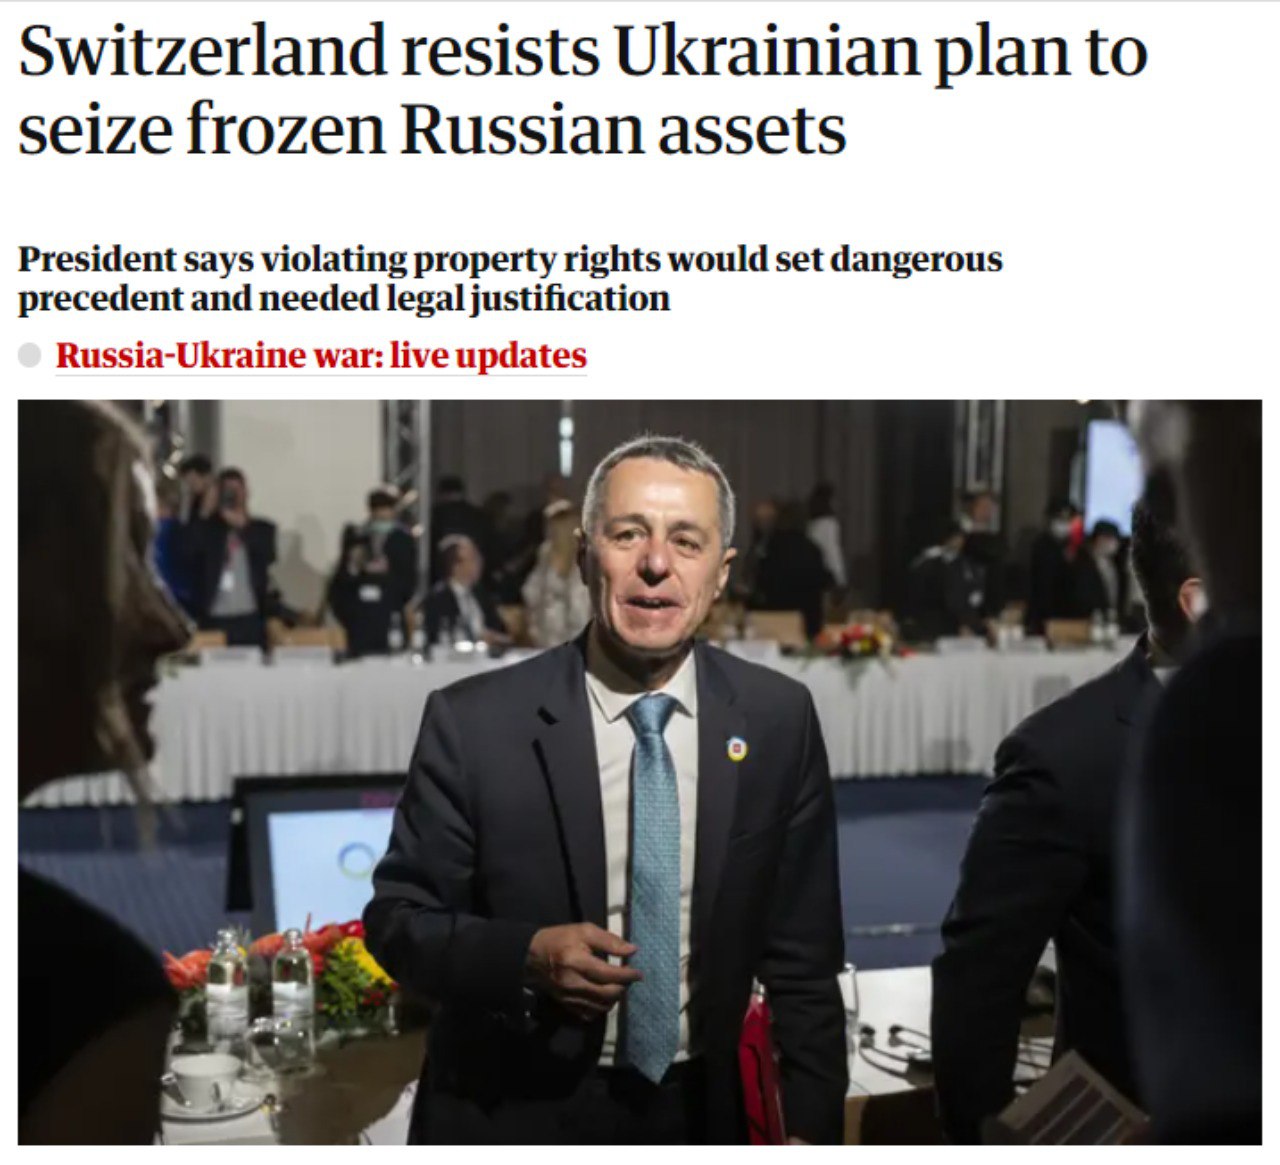 Пресс-секретарь швейцарского Минэкономики Фабиан Майенфиш сообщил о том, что власти Швейцарии выступили против идеи передать замороженные российские активы Украине